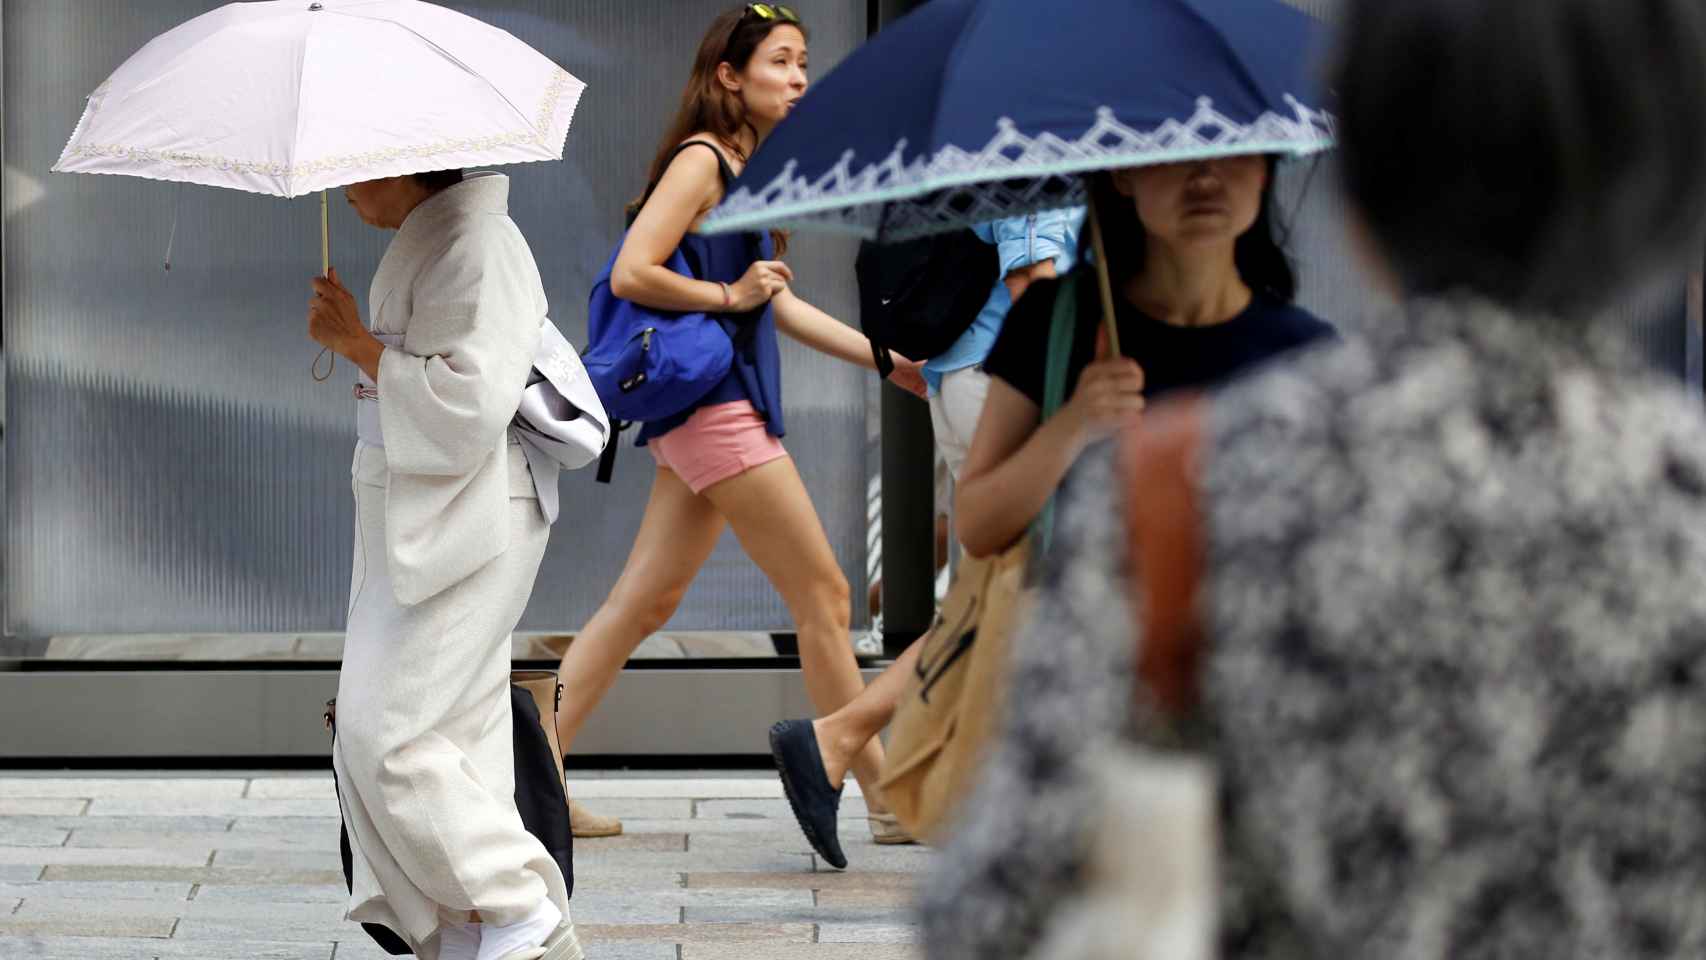 Una mujer vestida de kimono usando una sombrilla camina por una calle durante una ola de calor en Tokio.